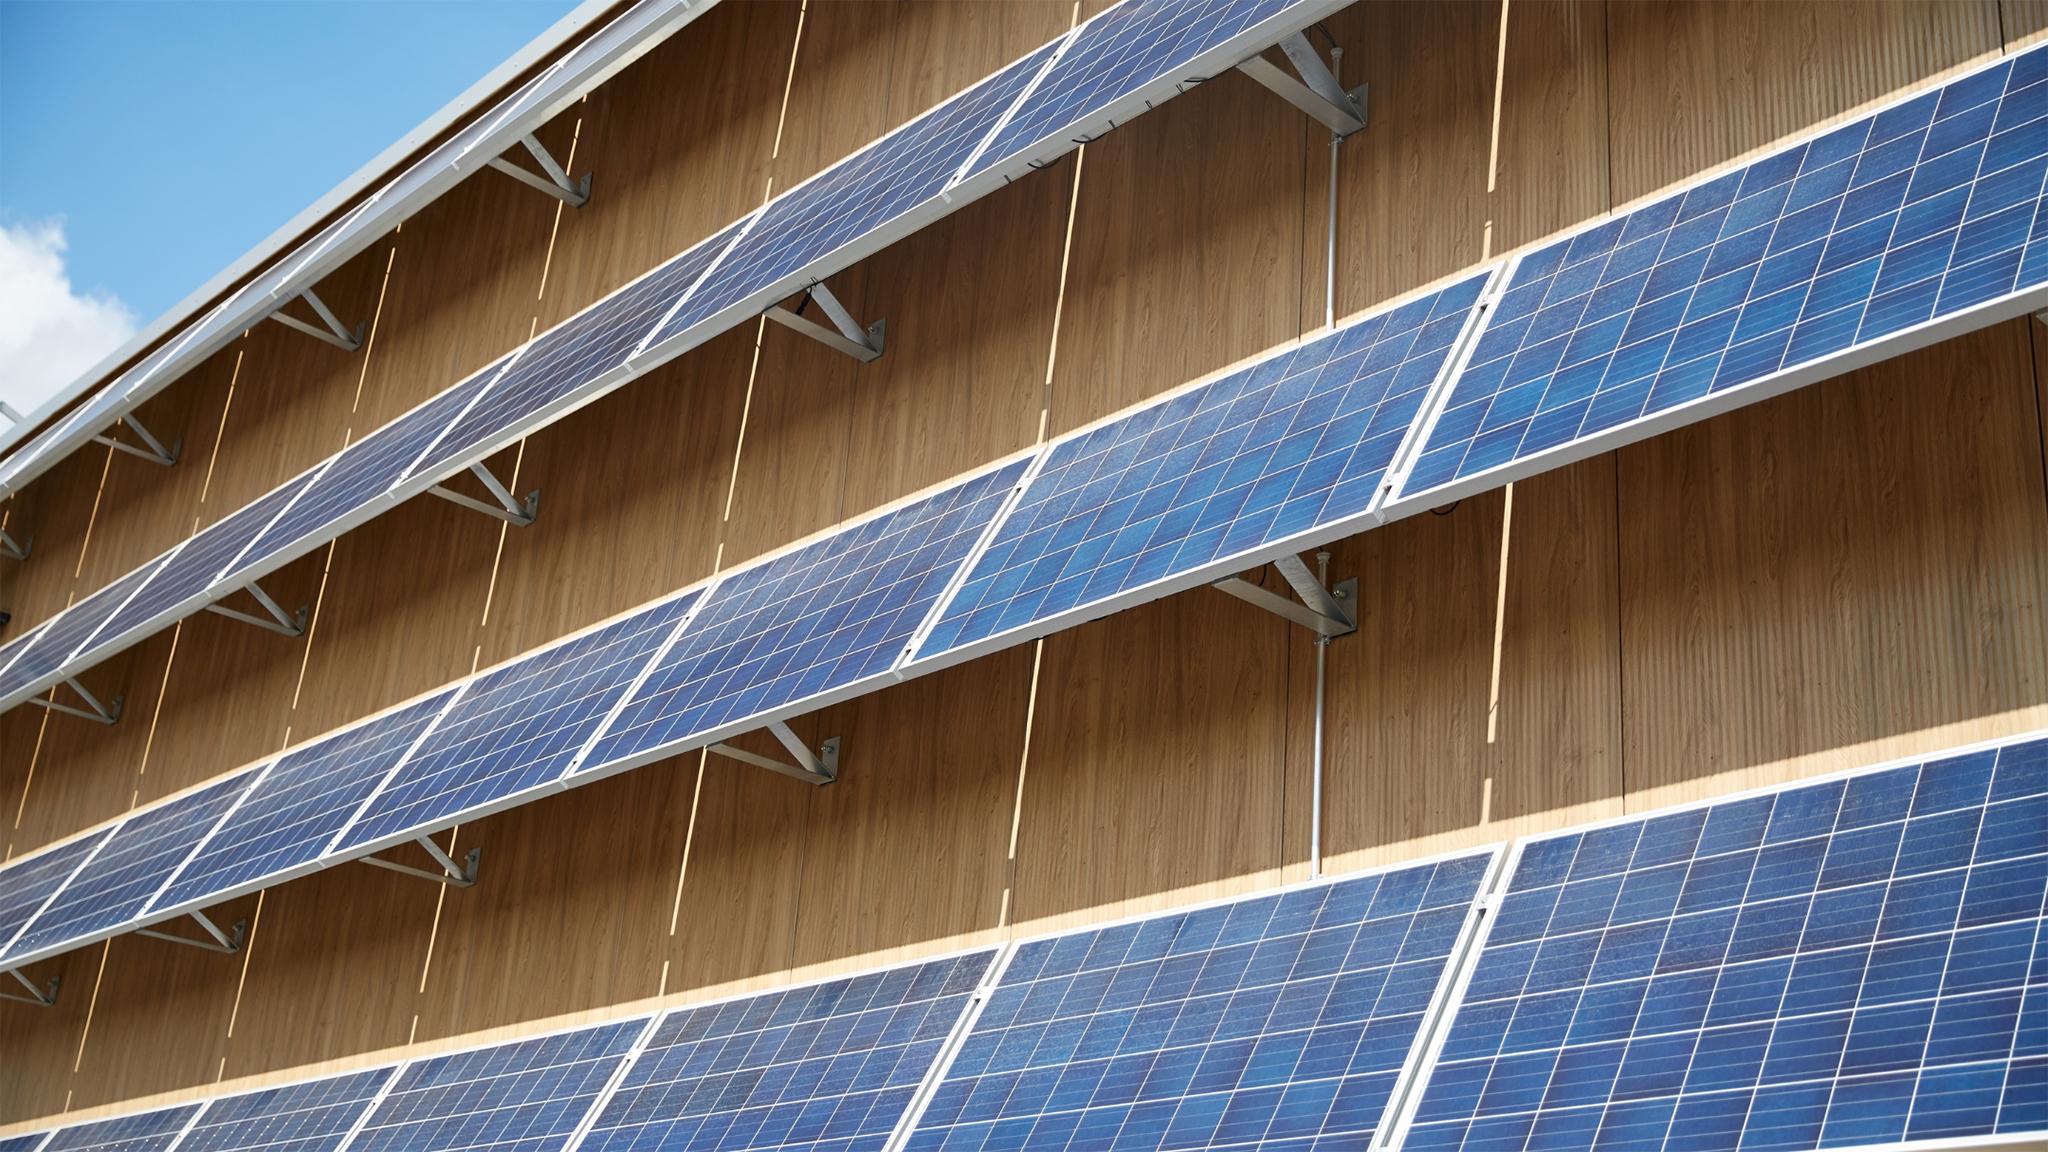 Energieeffiziente Solarfassade, die den Einfallswinkel der Wintersonne optimal nutzt.